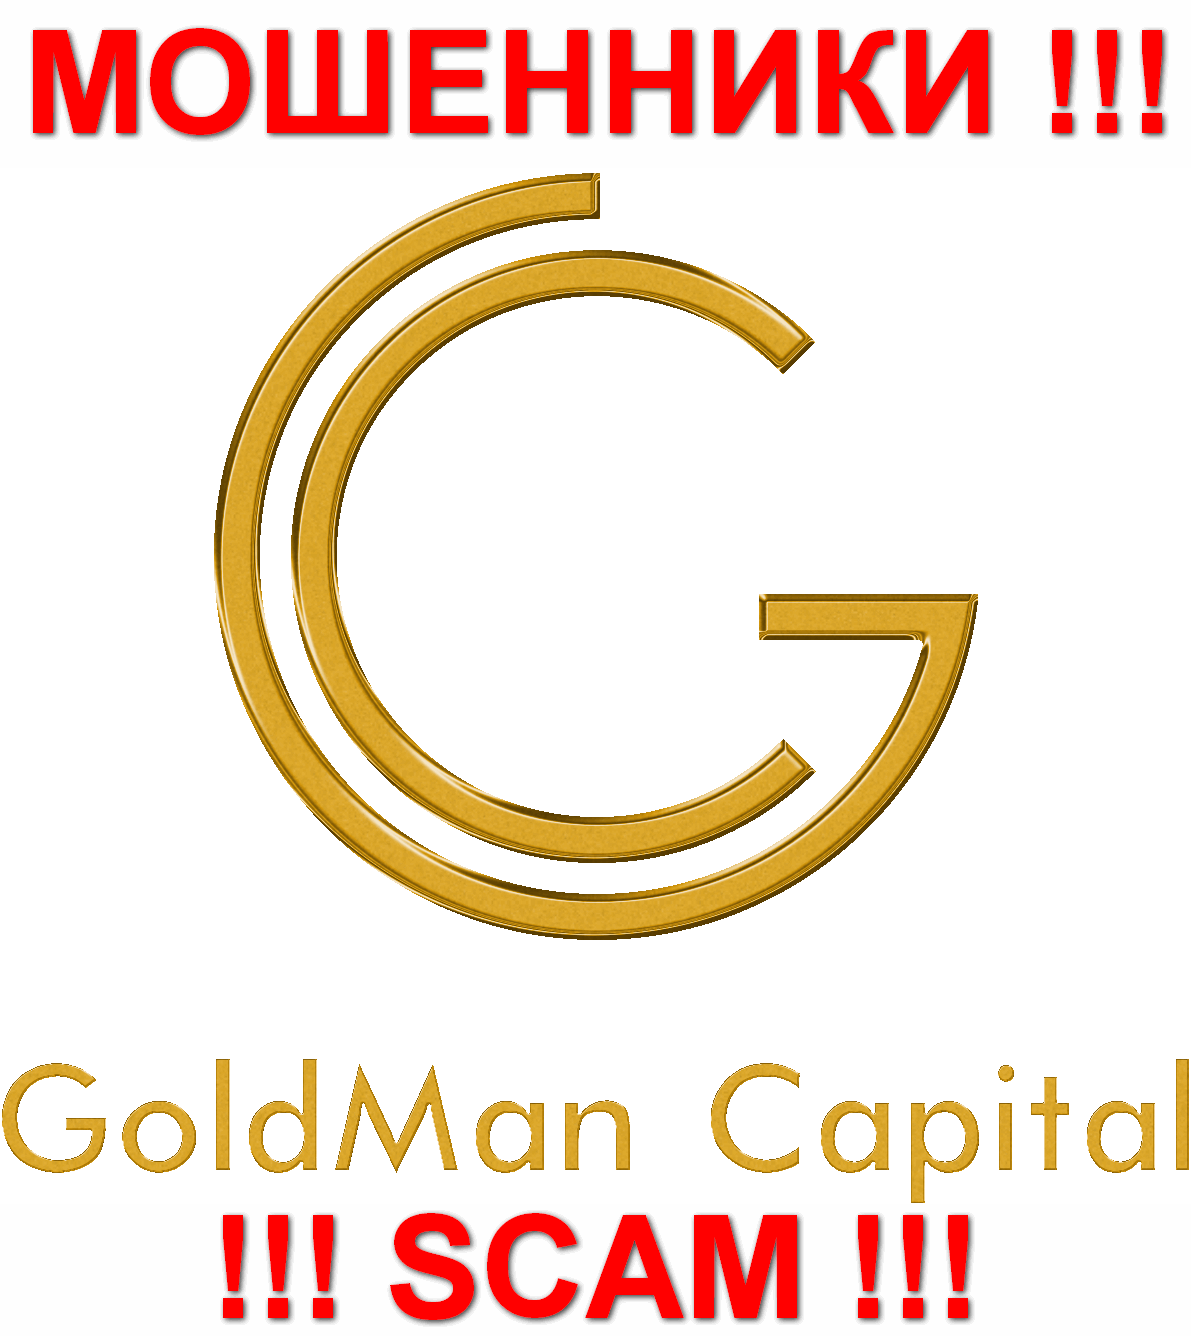 Goldman Capital - ЖУЛИКИ !!! SCAM !!!